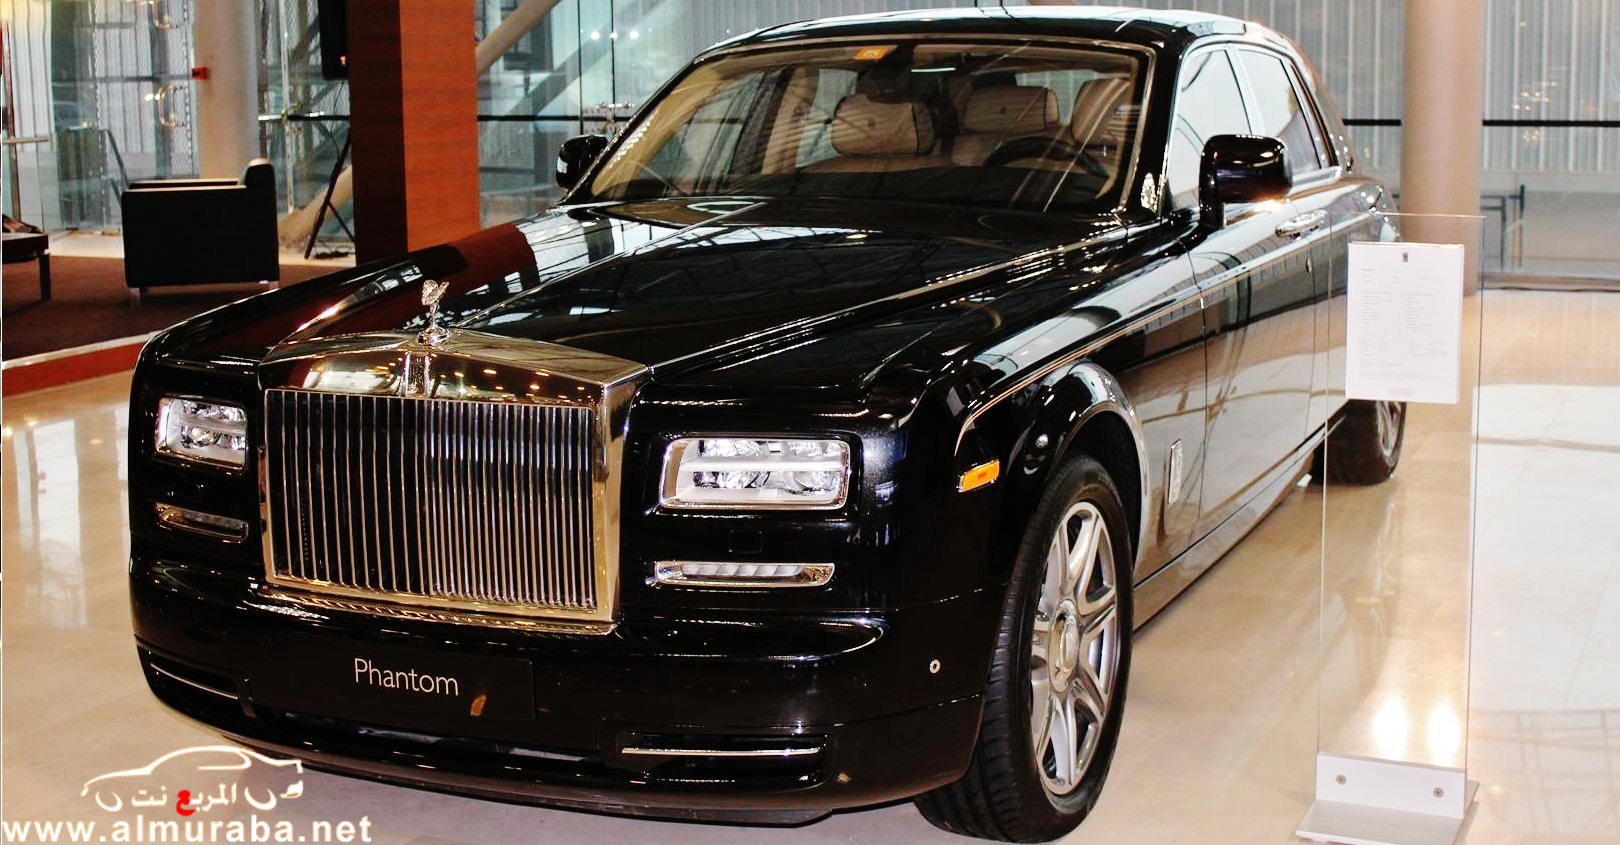 رولز رويس فانتوم 2013 في اول صور لها مع الاسعار النهائية Rolls Royce Phantom 2013 1